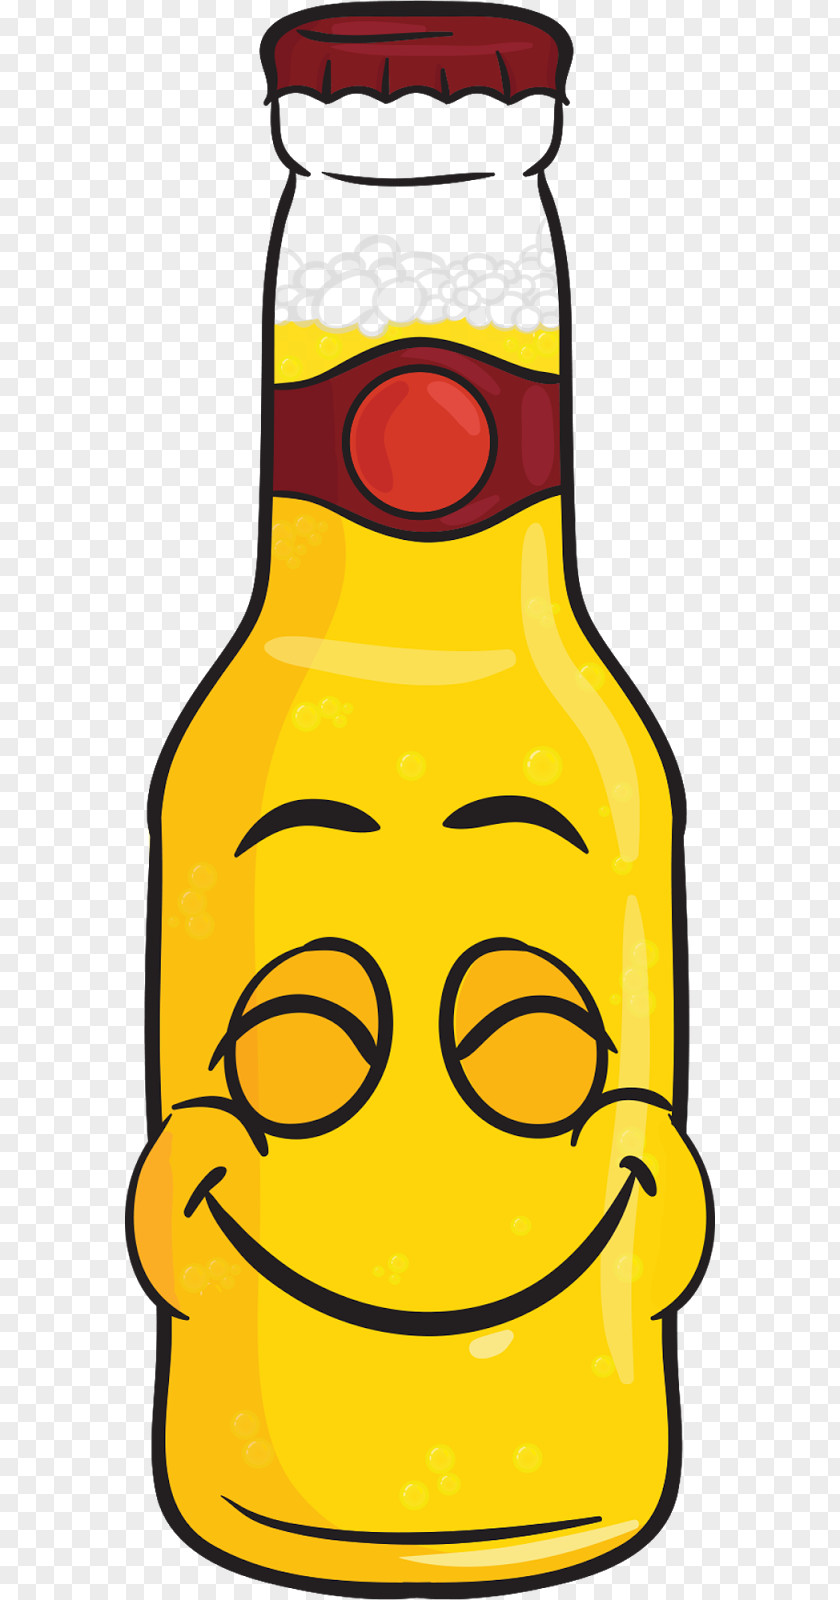 Beer Bottle Glasses Malt Liquor Alcoholic Drink PNG